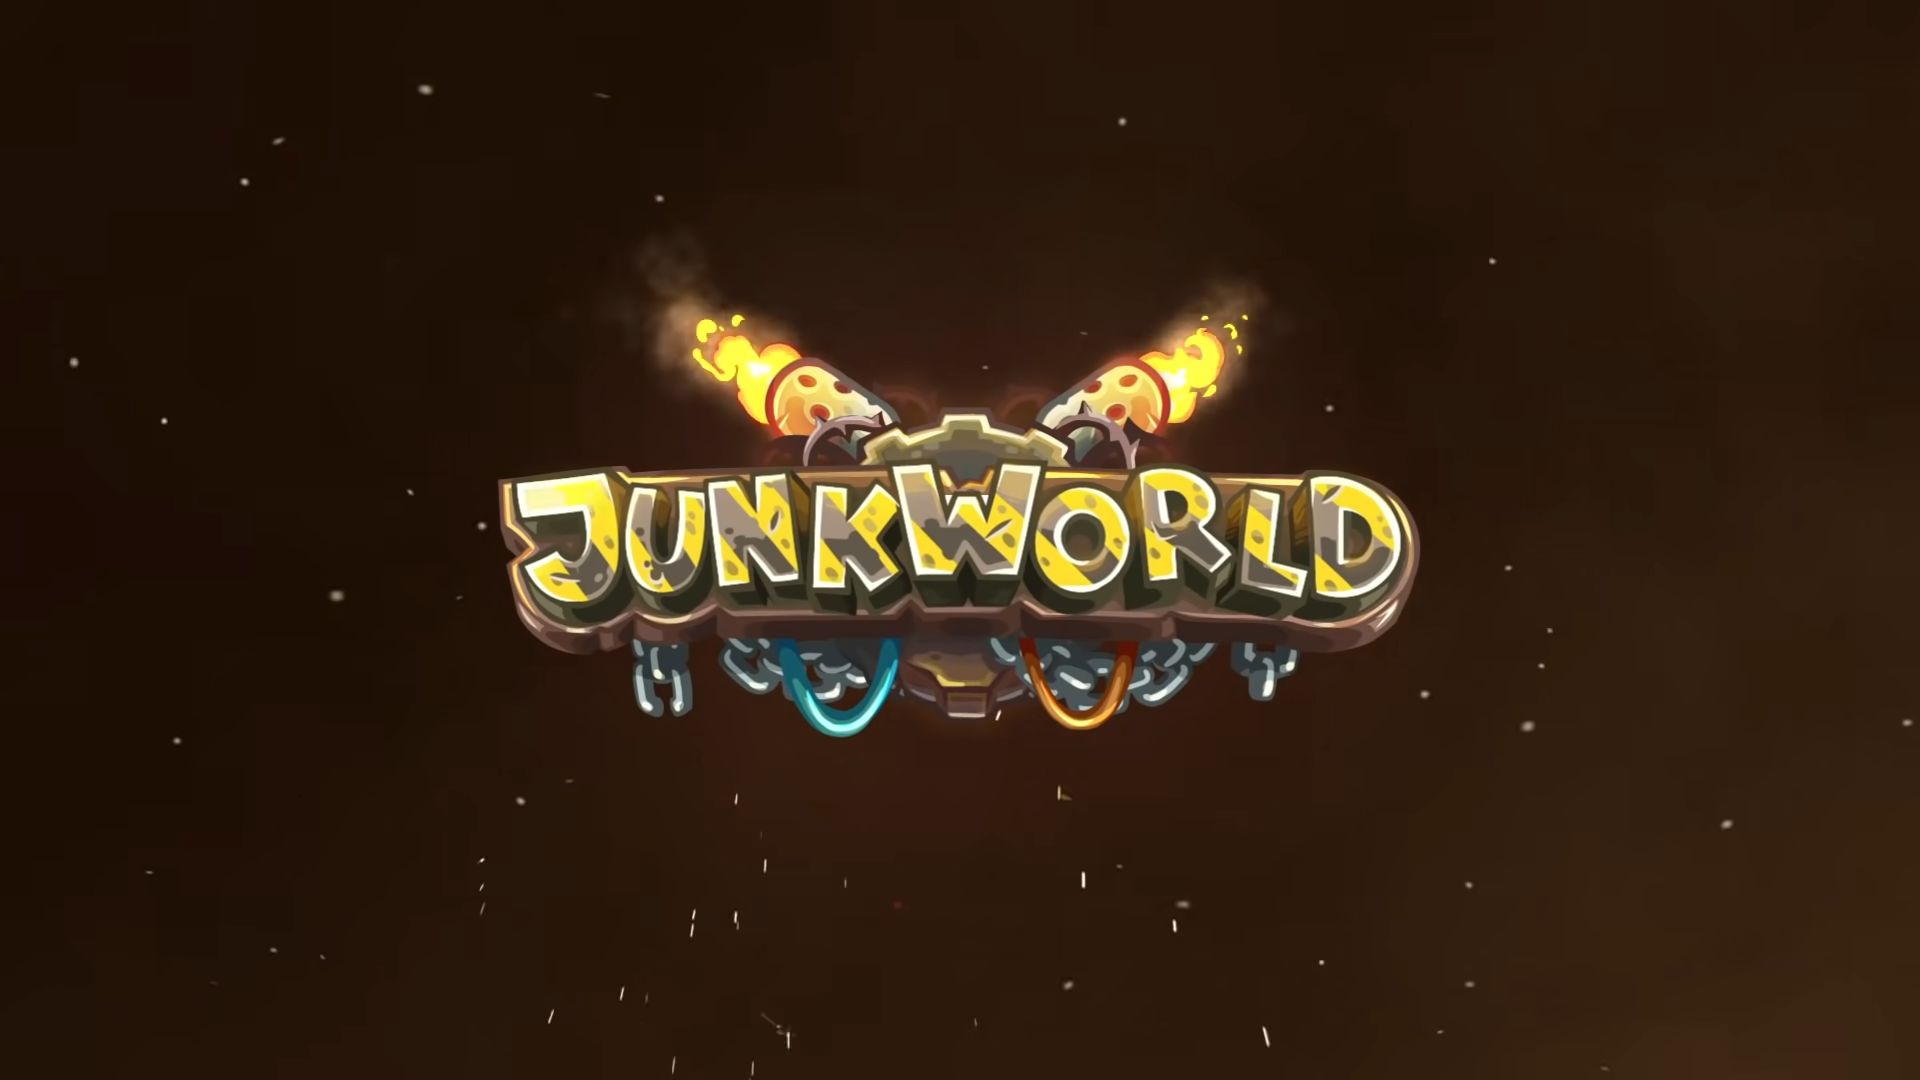 Junkworld TD download the last version for apple